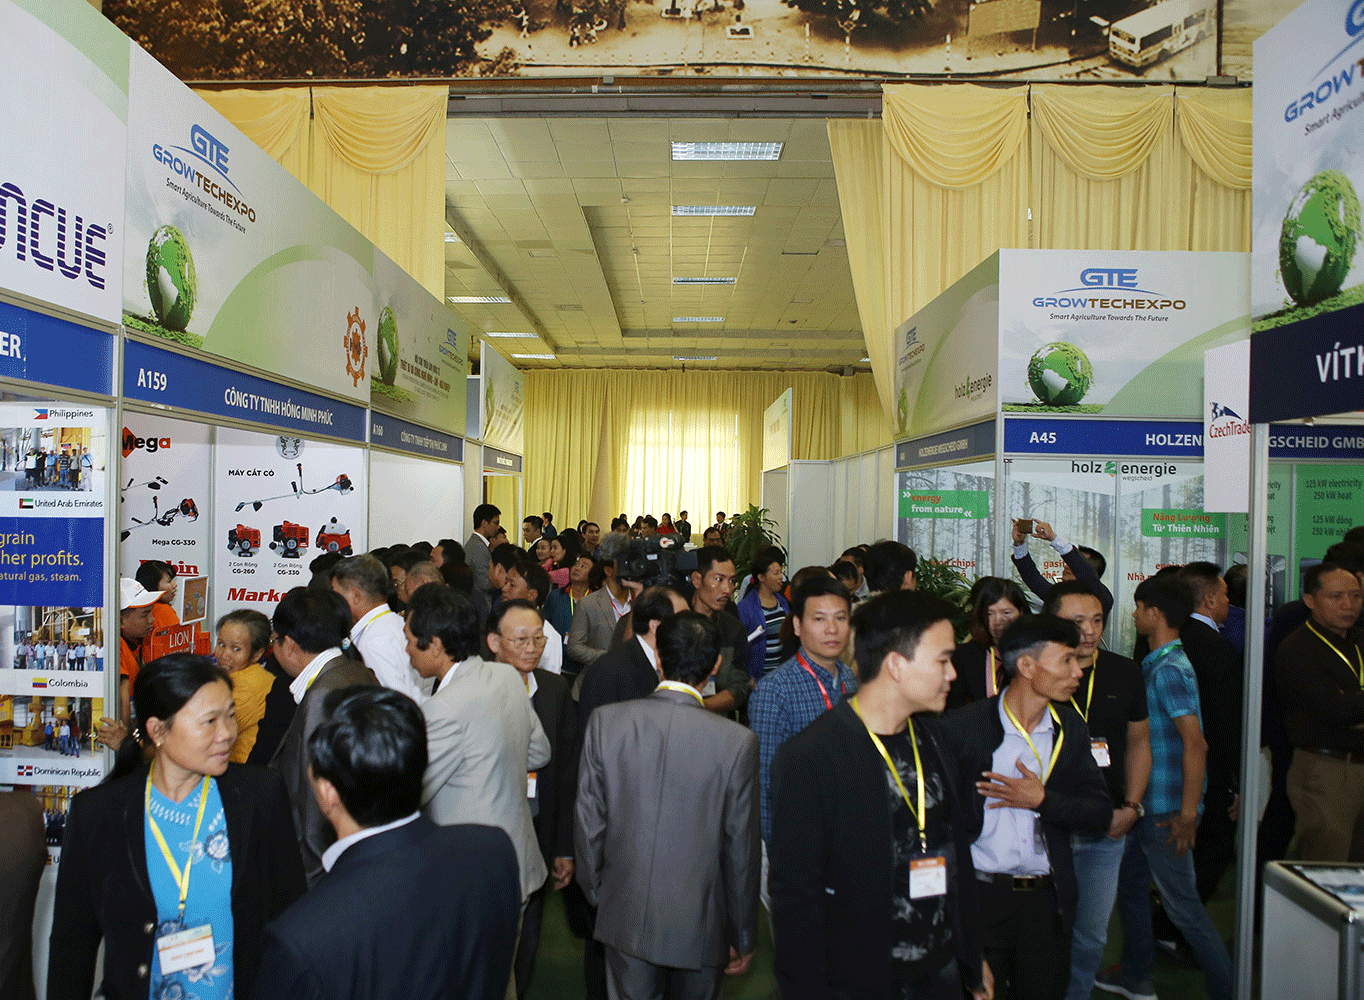 Triển lãm và Hội nghị Nông Lâm Ngư nghiệp quy mô quốc tế lần đầu tiên tại Việt Nam